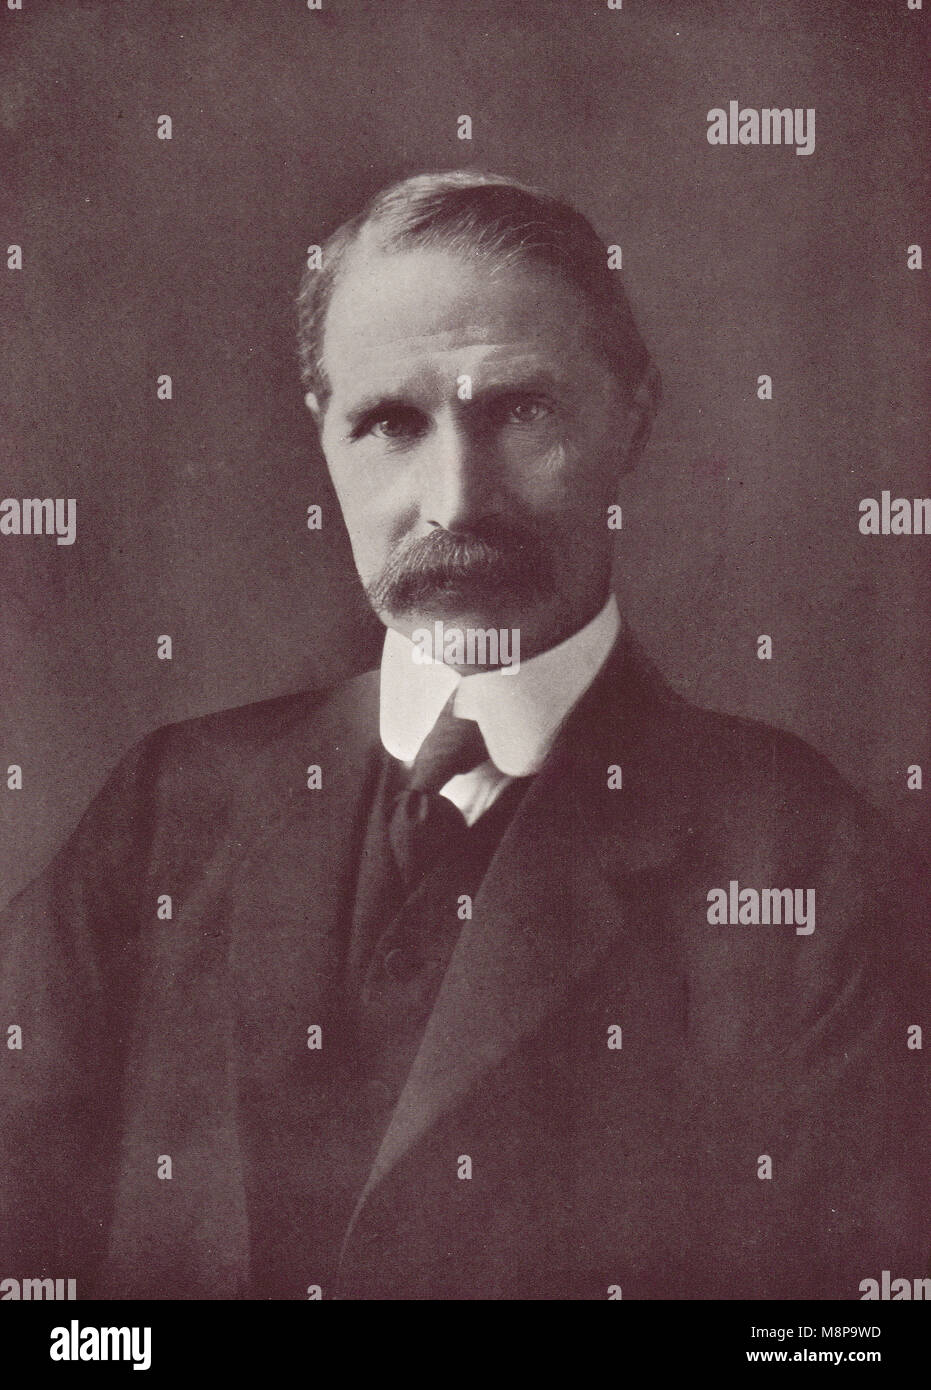 Andrew Bonar Law, chef du parti conservateur, en 1911 Banque D'Images